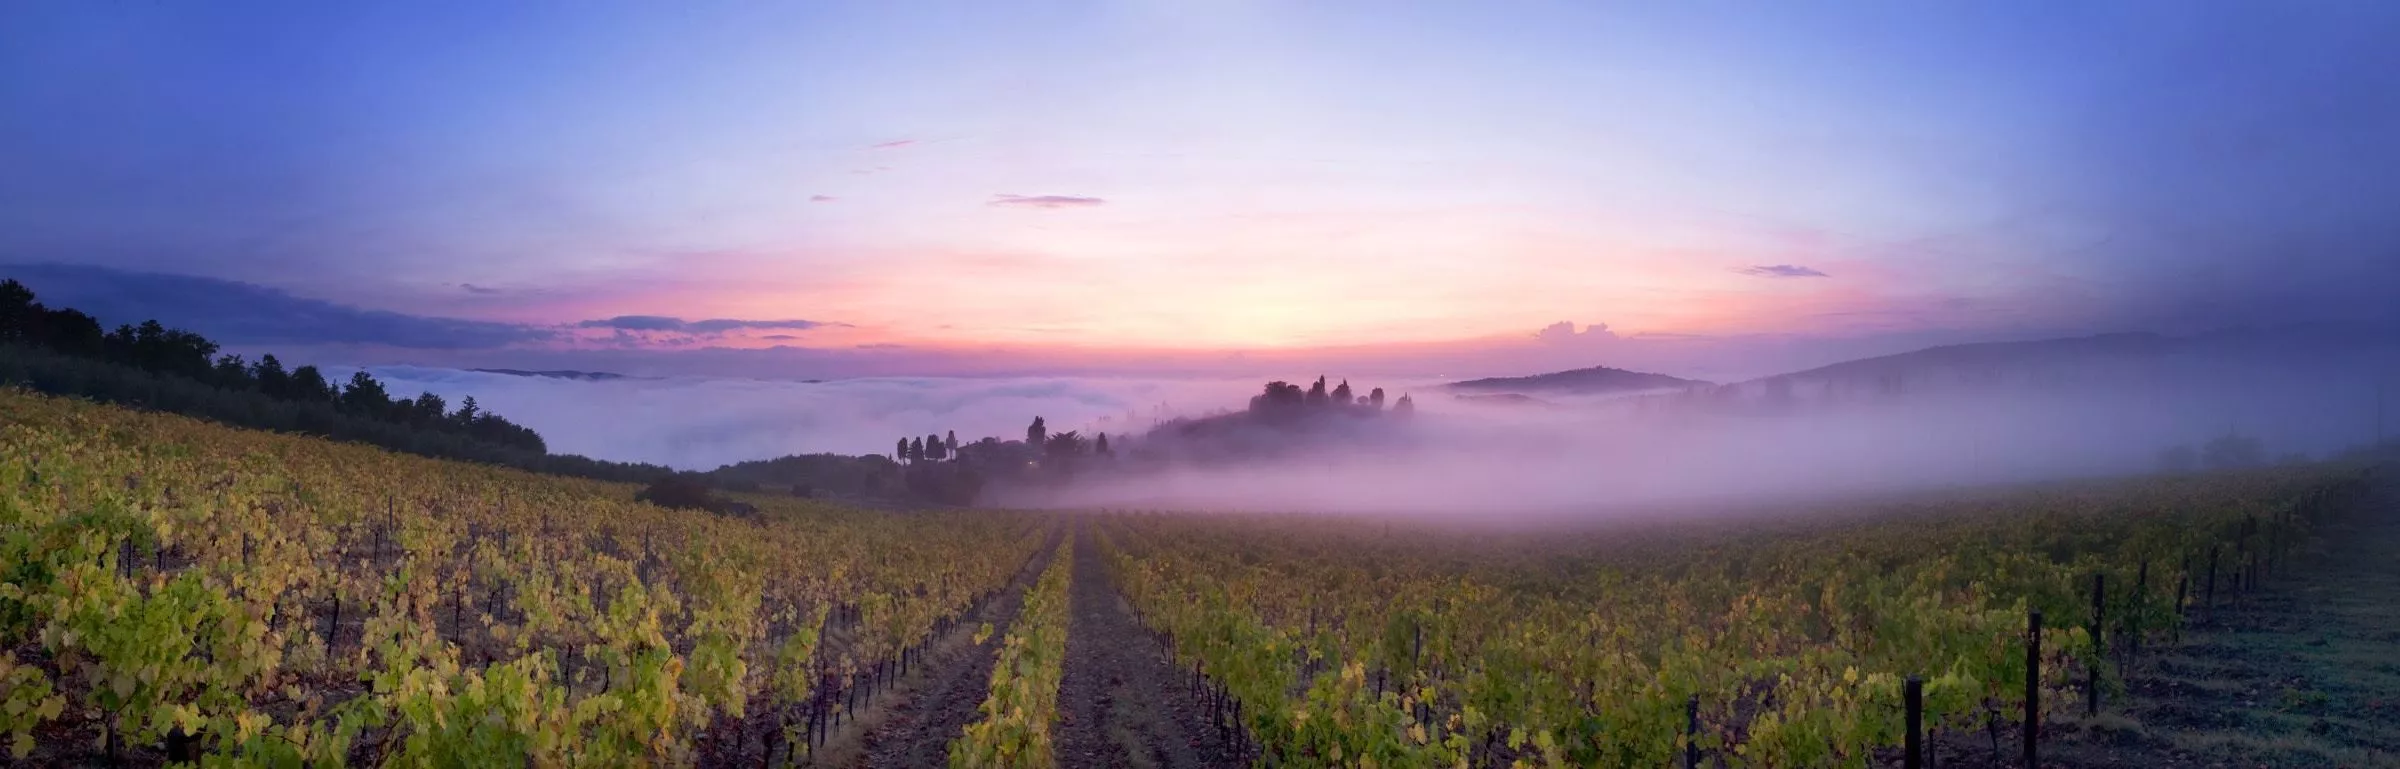 Sanft legt sich abendlicher Nebel über die Weinberge des Chianti